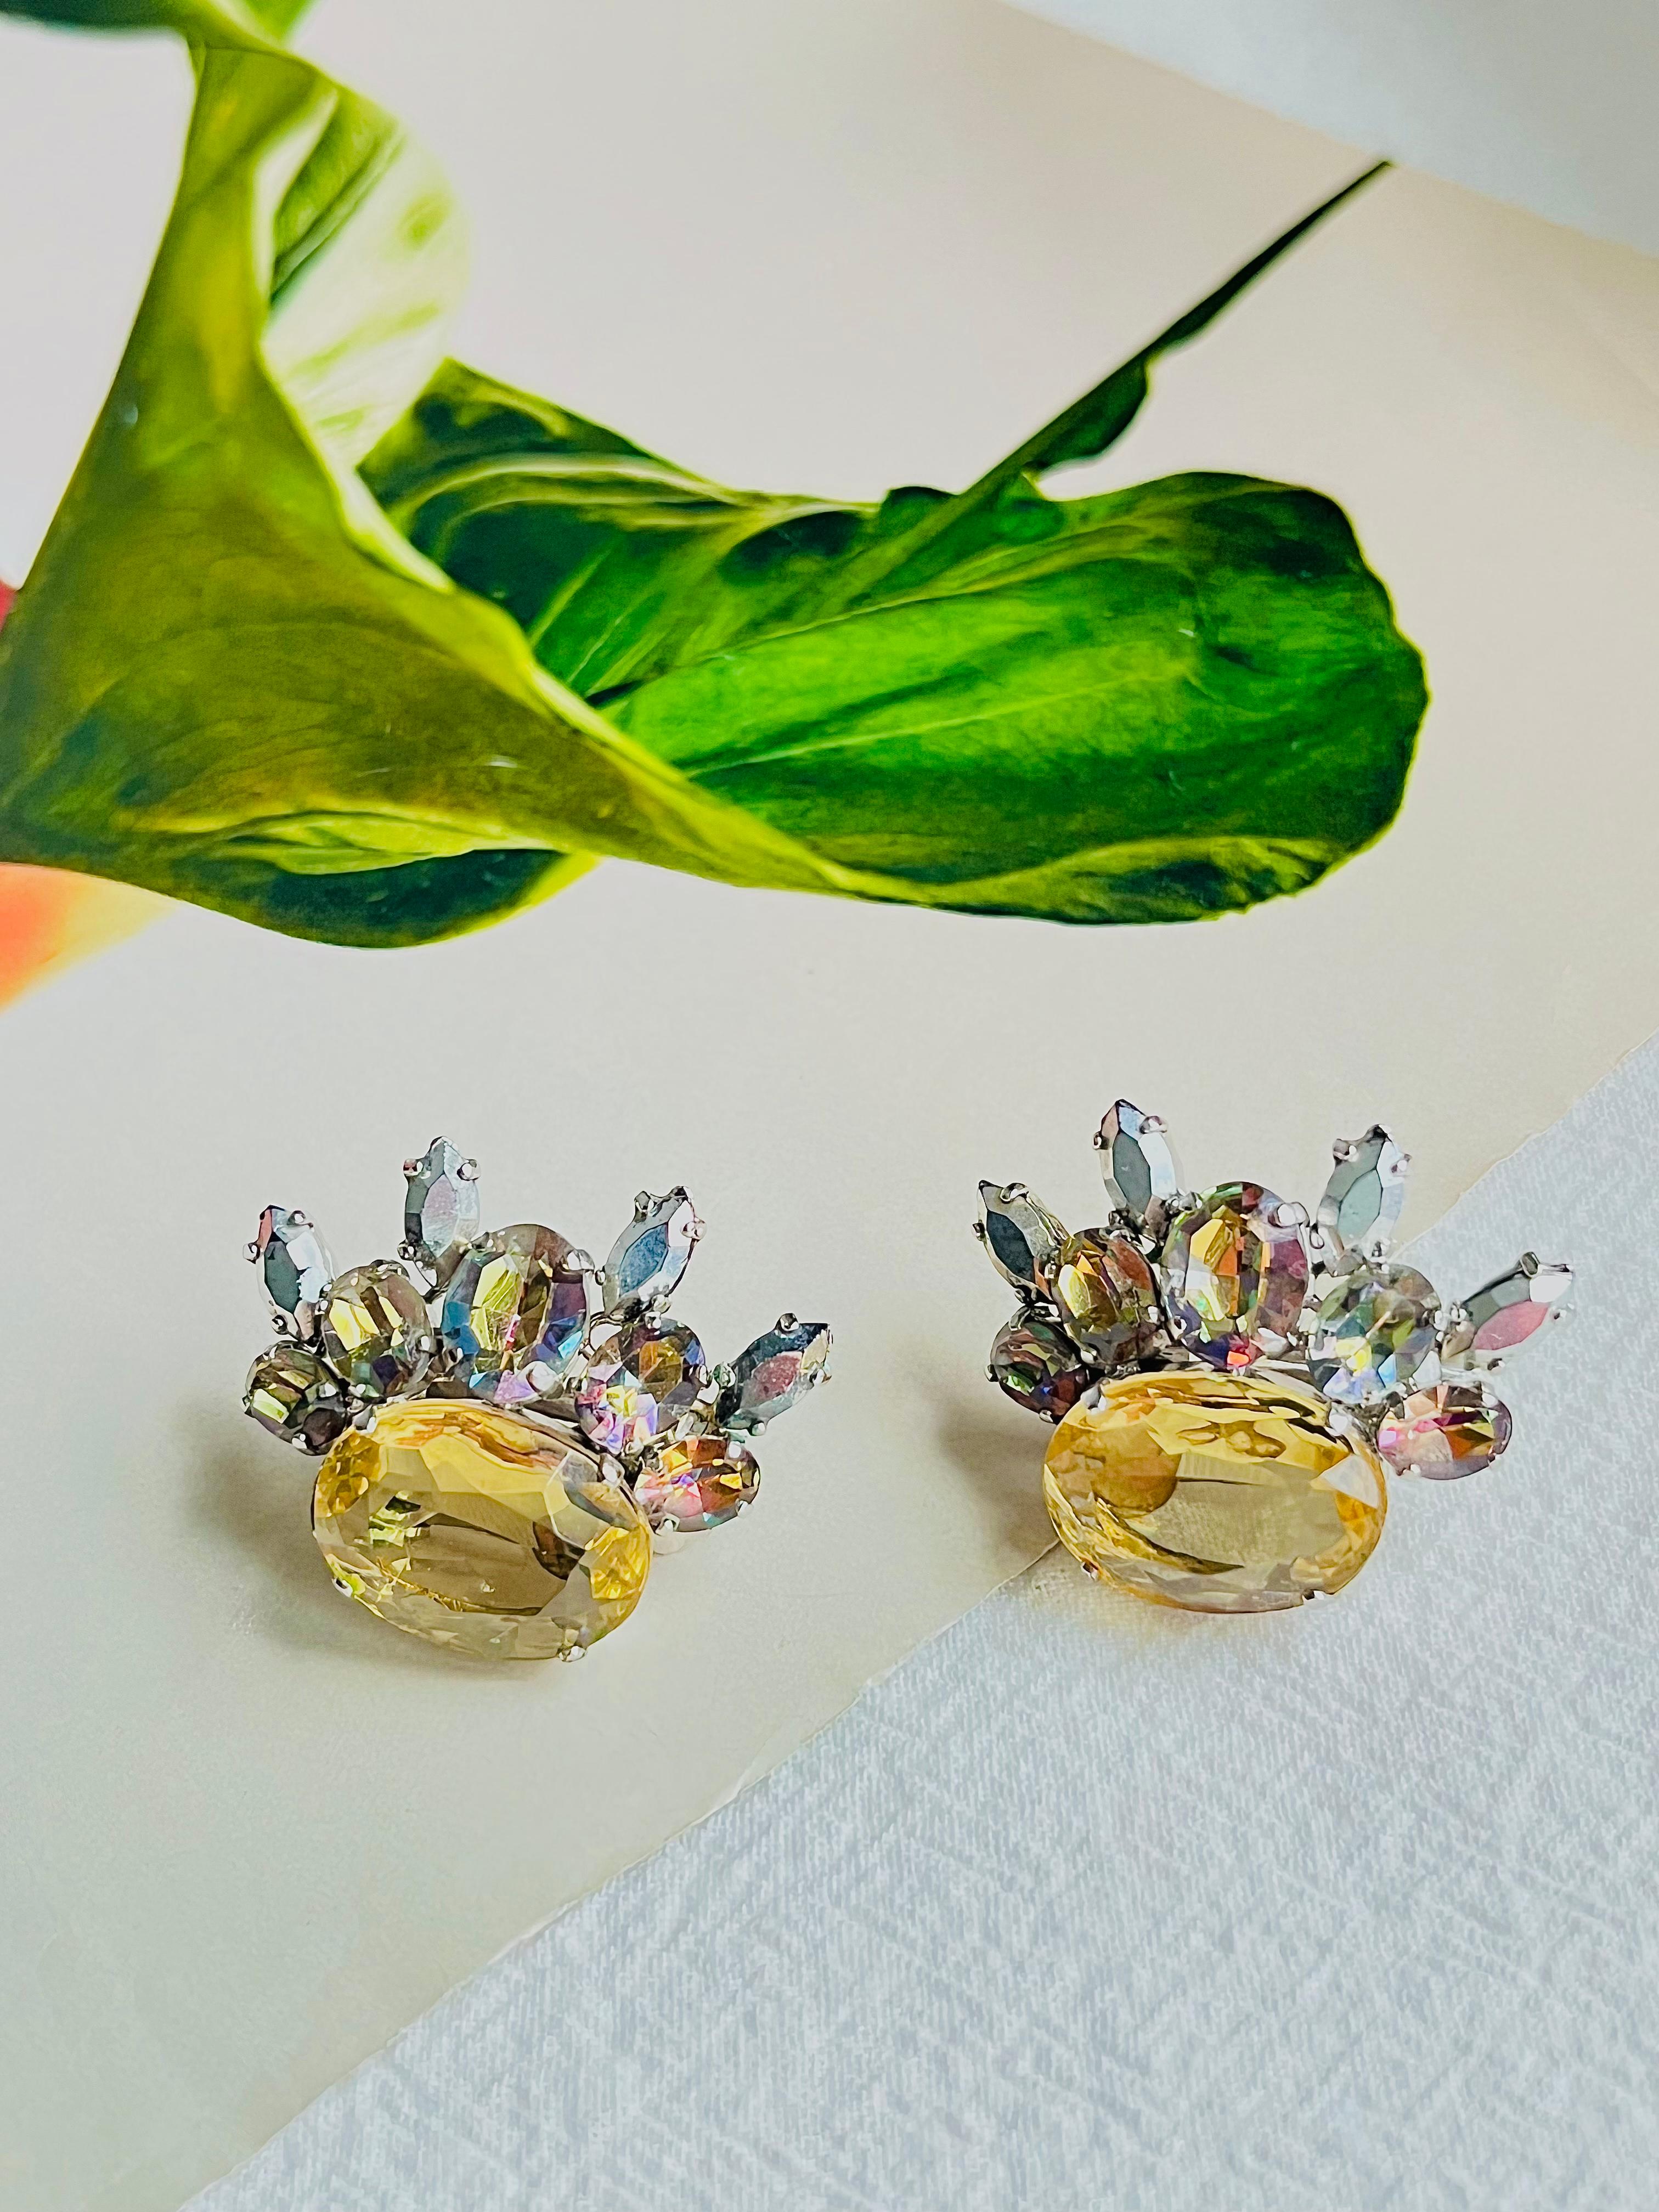 Christian Dior 1958 Vintage Floral Wing Iridescent Yellow Crystal Elegant Clip Earrings, Silver Tone

Très bon état. Légères rayures, à peine perceptibles. 100% authentique. Rare à trouver. 

Une très belle paire de boucles d'oreilles par Chr. Dior,